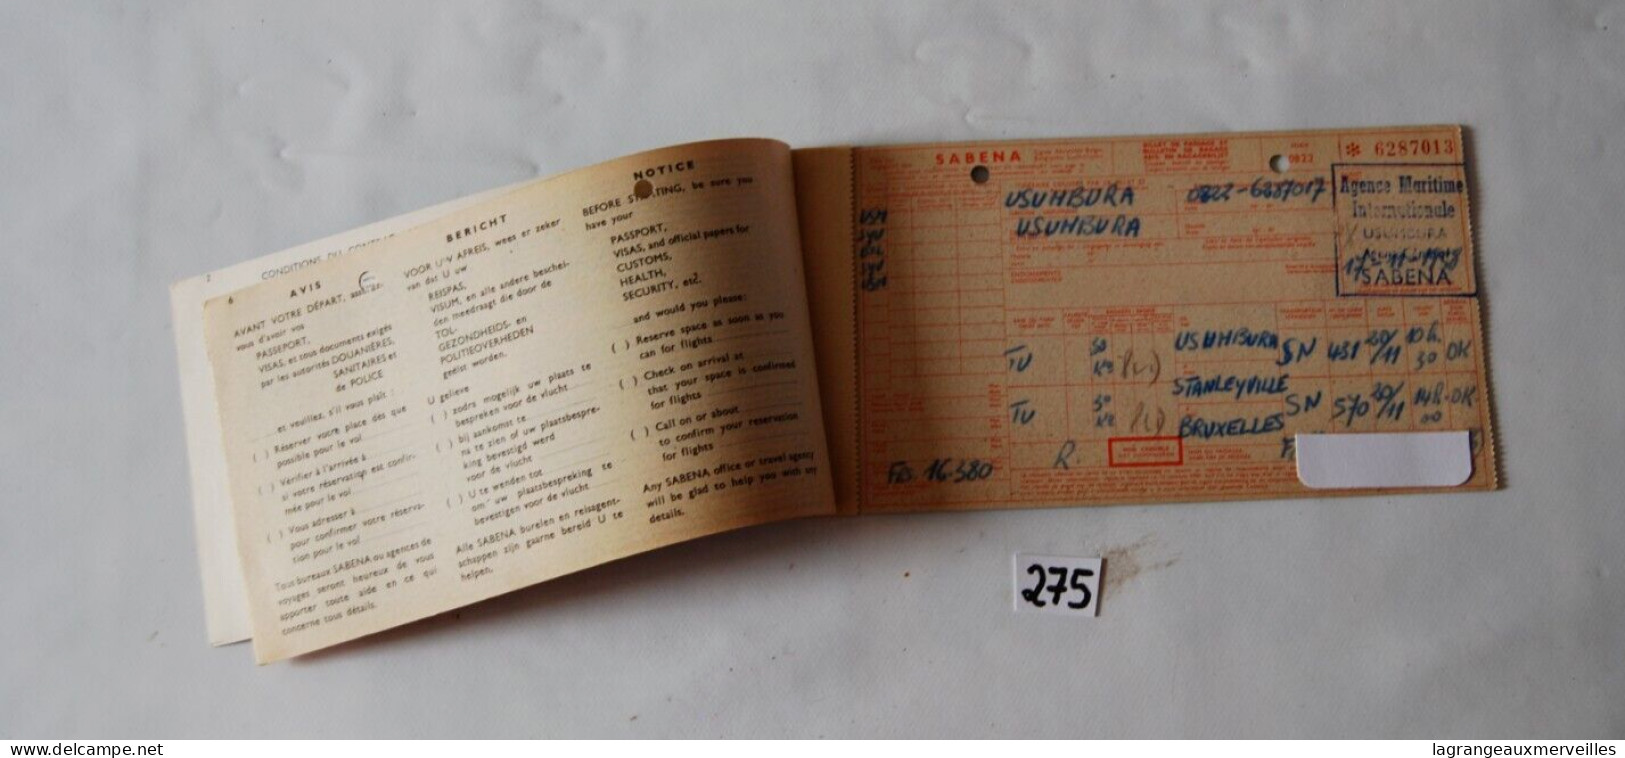 C275 Ancien Billet De Voyage - SABENA BELGIAN AIRLINES - GEVAERT - Usumbura - Mondo